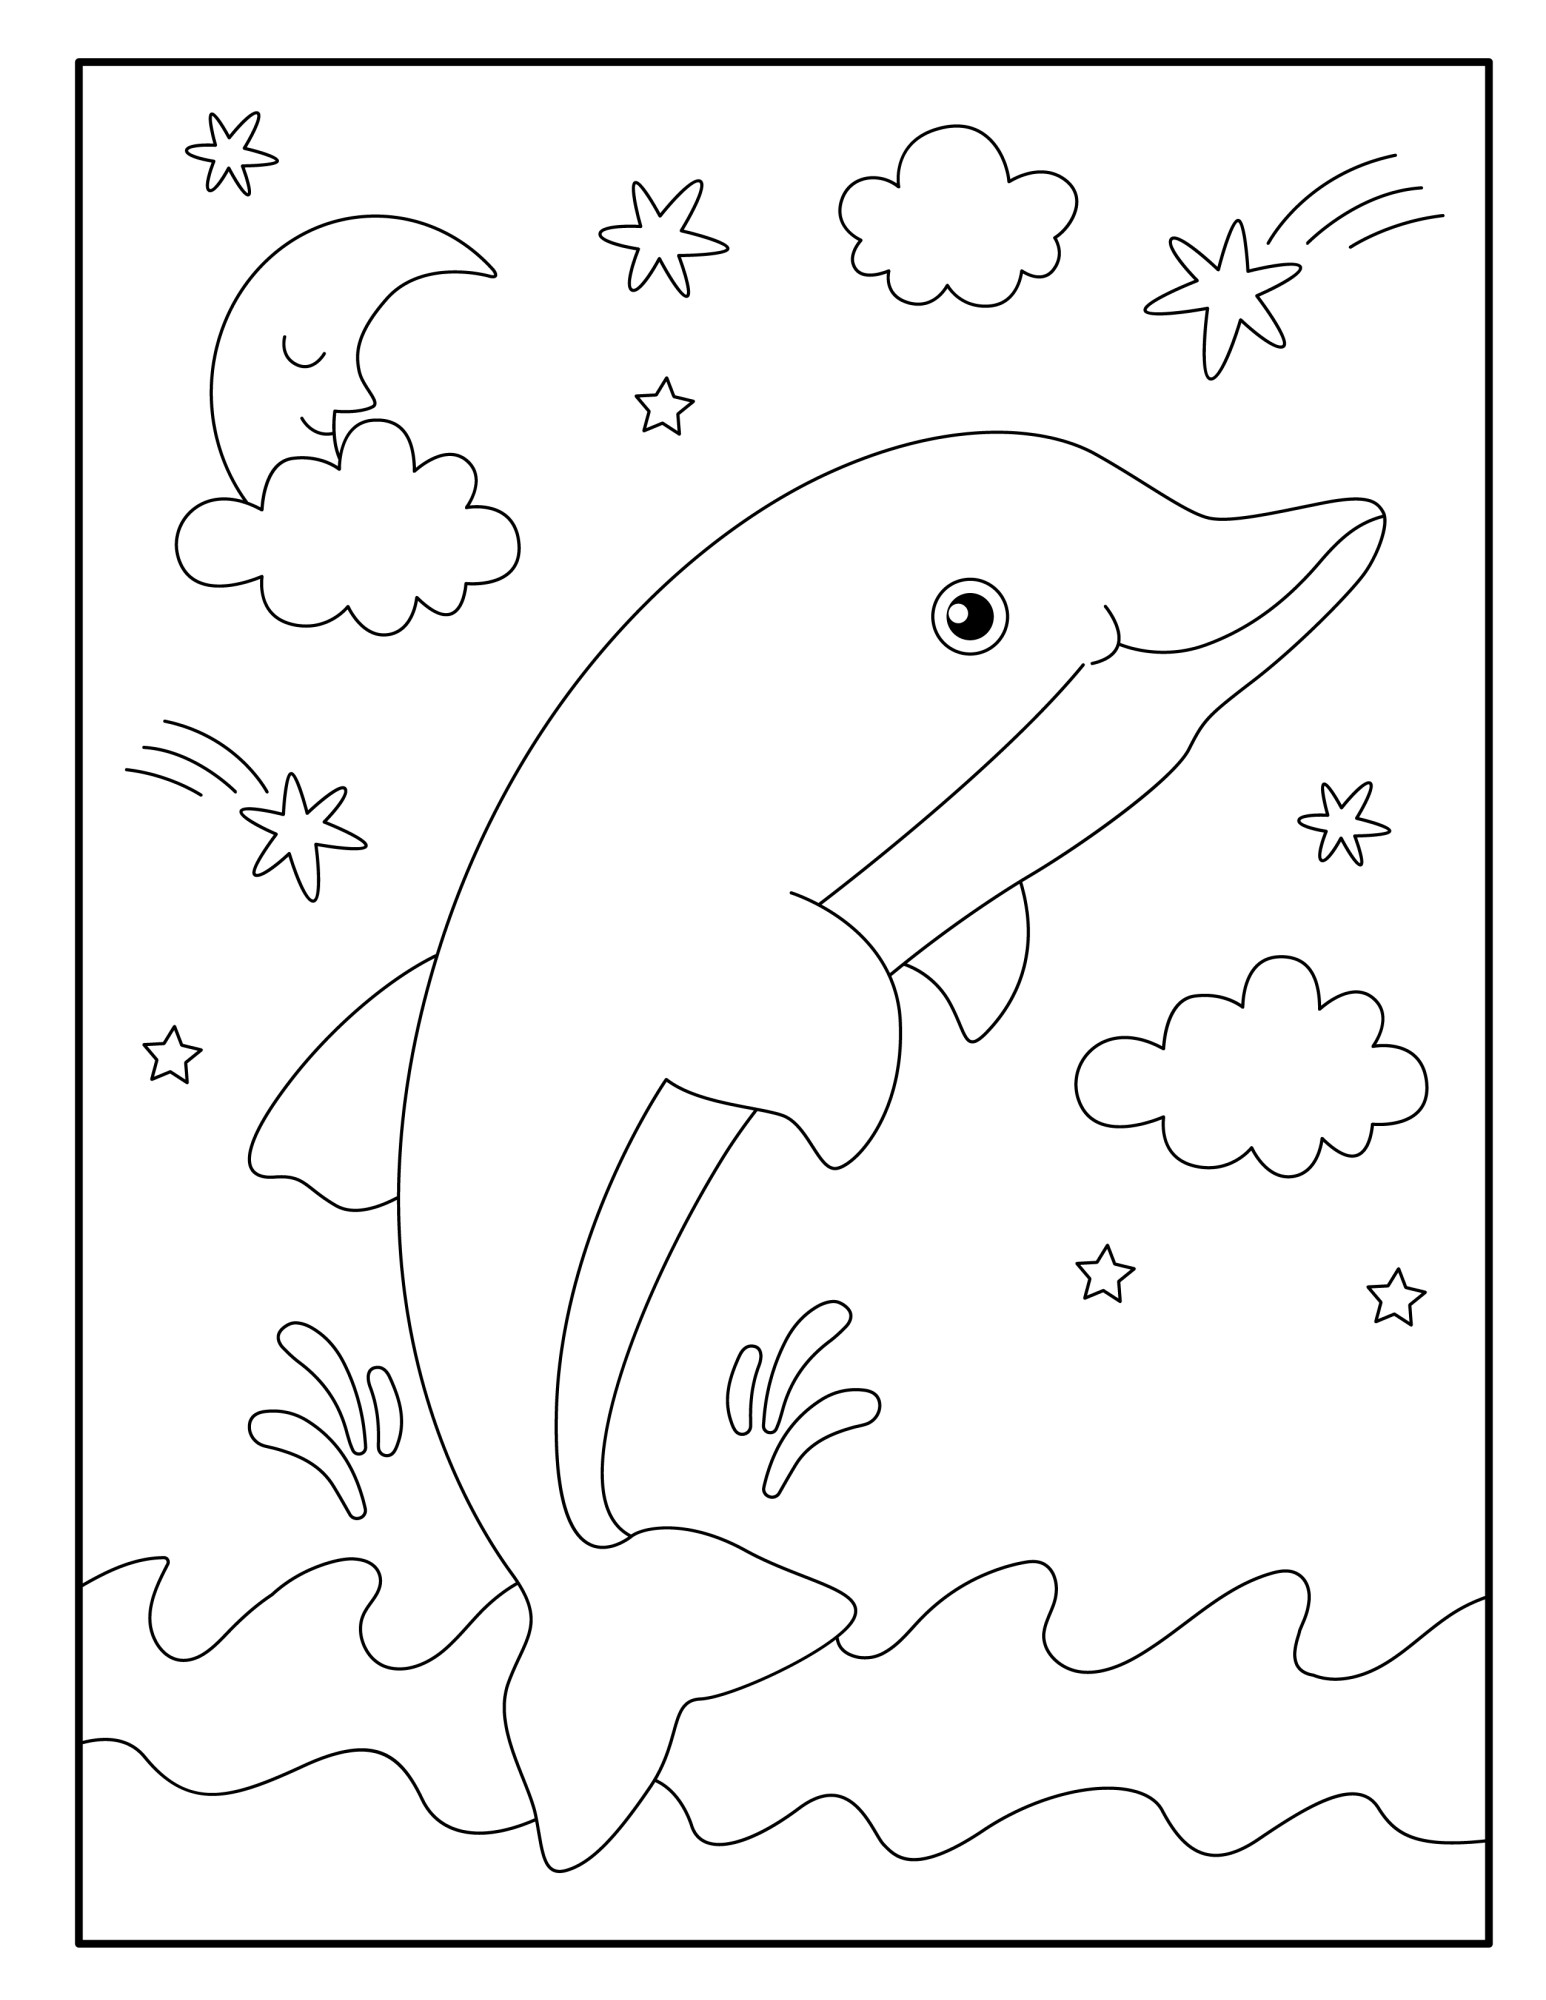 Раскраска для детей: дельфин над водой на фоне звезд и луны